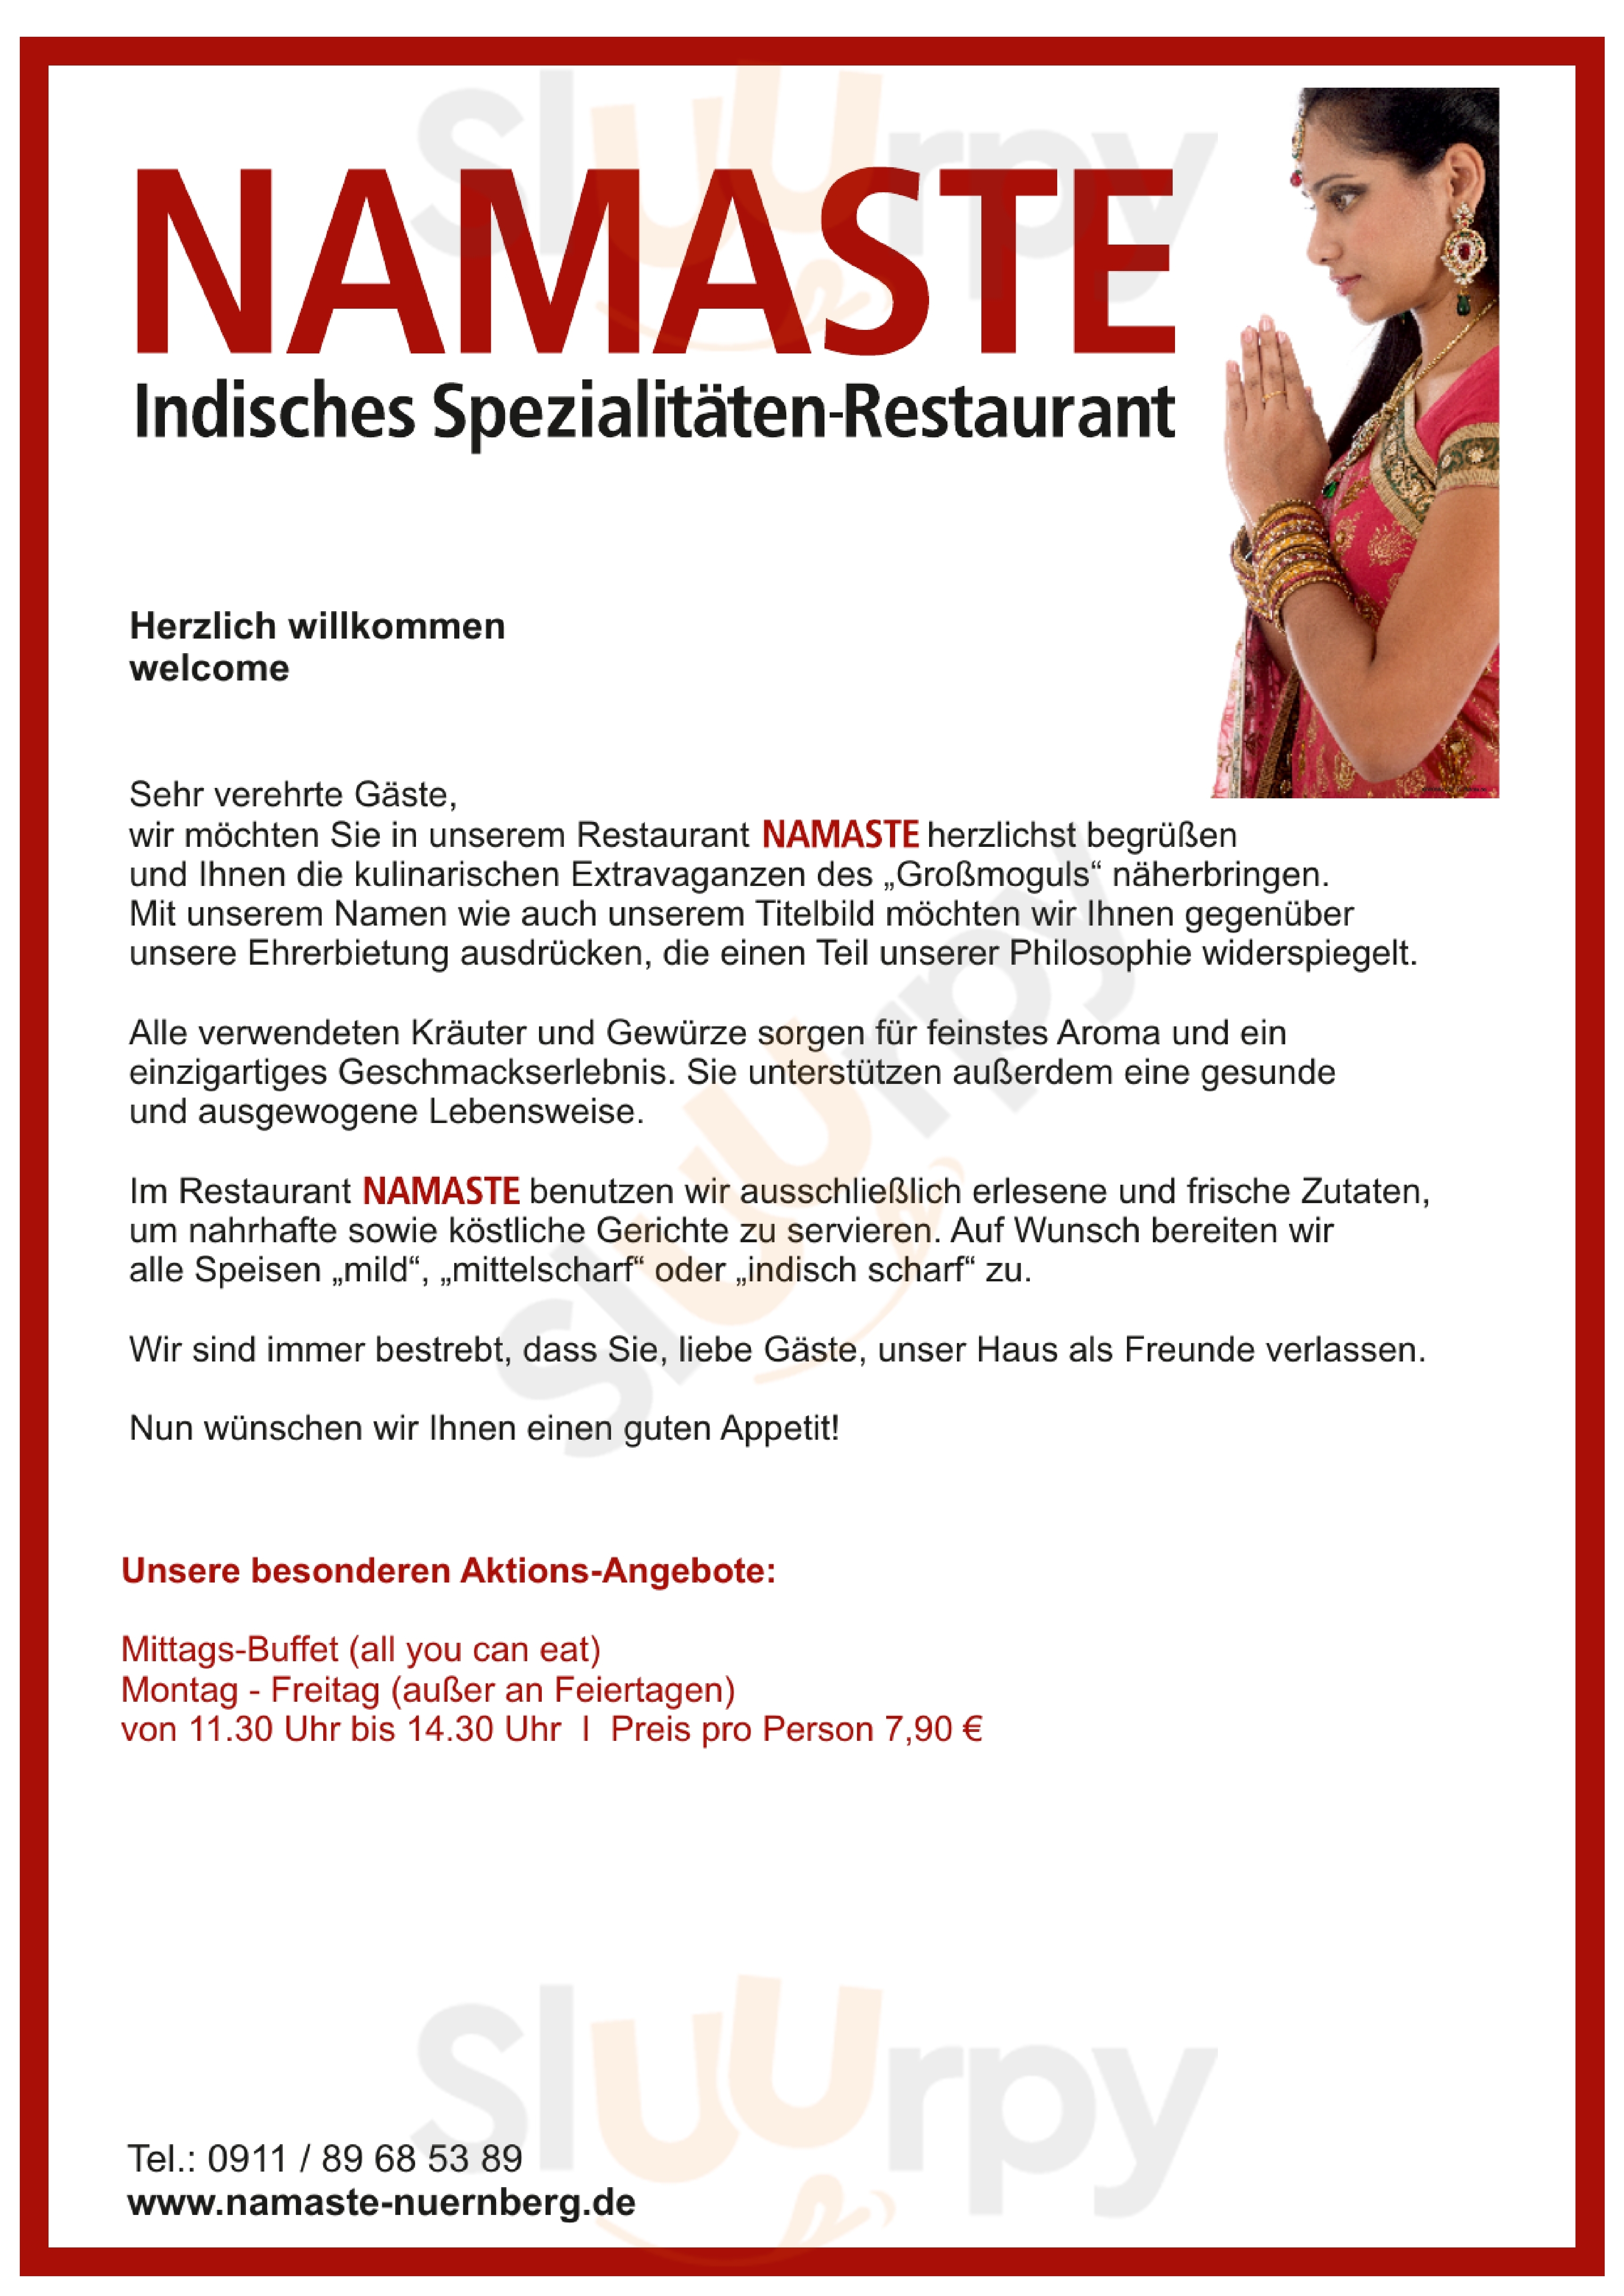 Namaste Indisches Restaurant Nürnberg Menu - 1